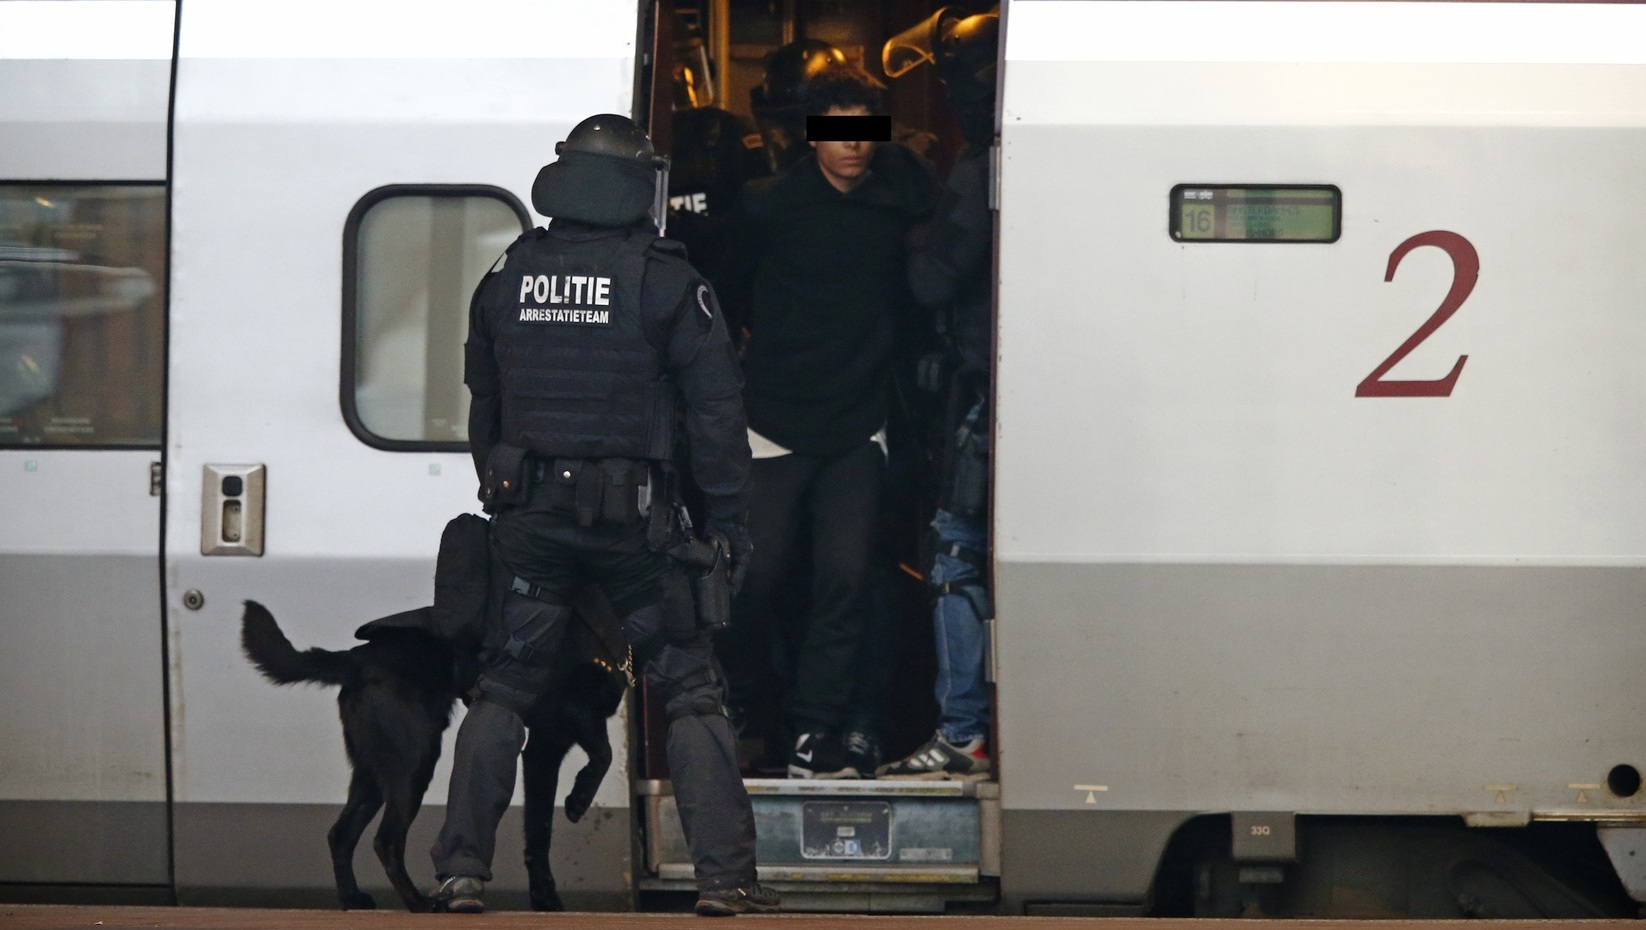 Politiehond beet agent tijdens aanhouding in Thalys